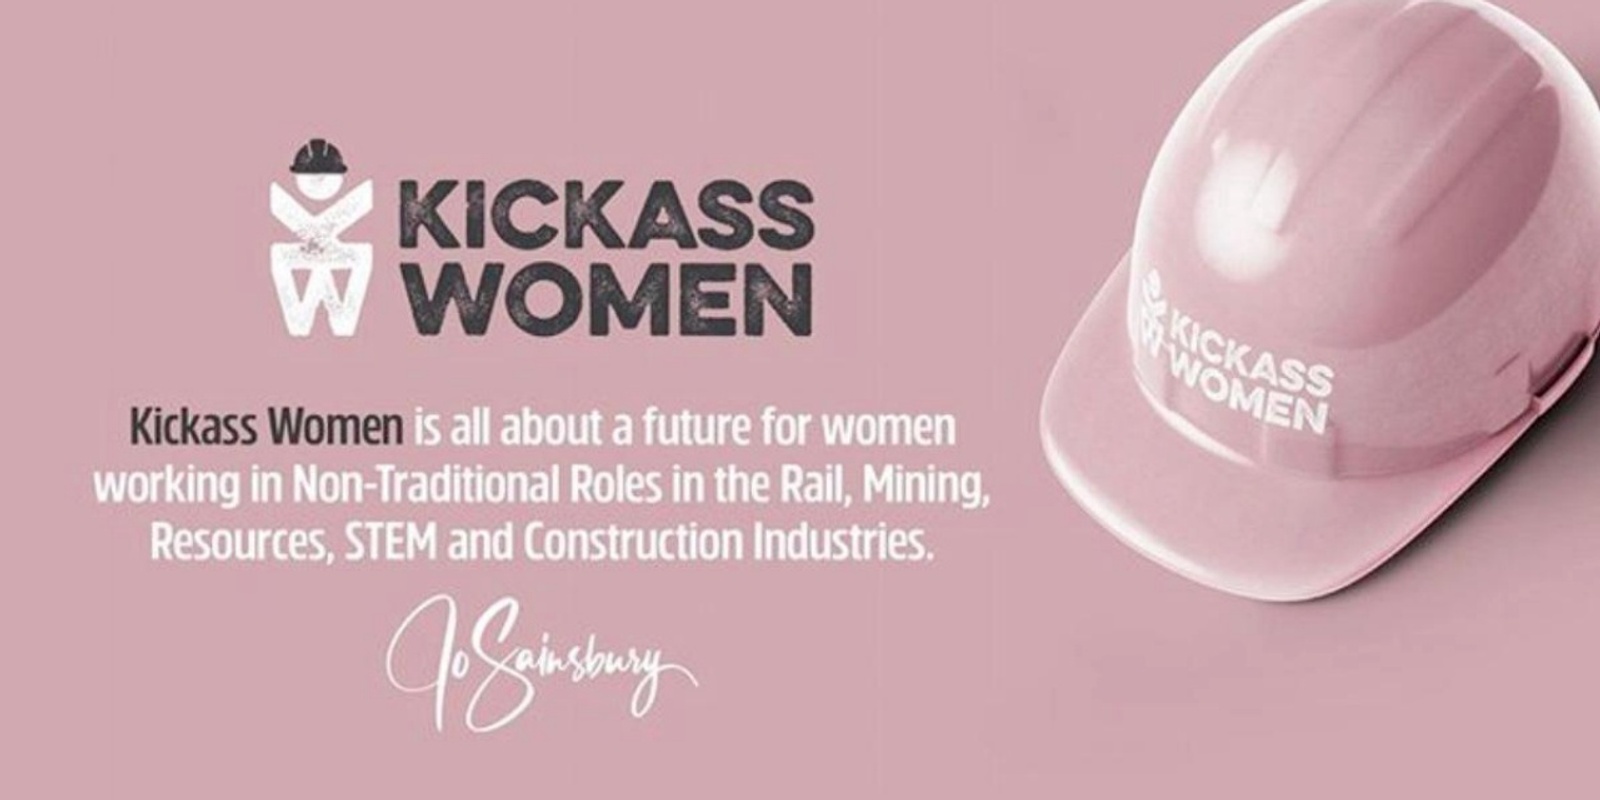 Kickass Women 's banner